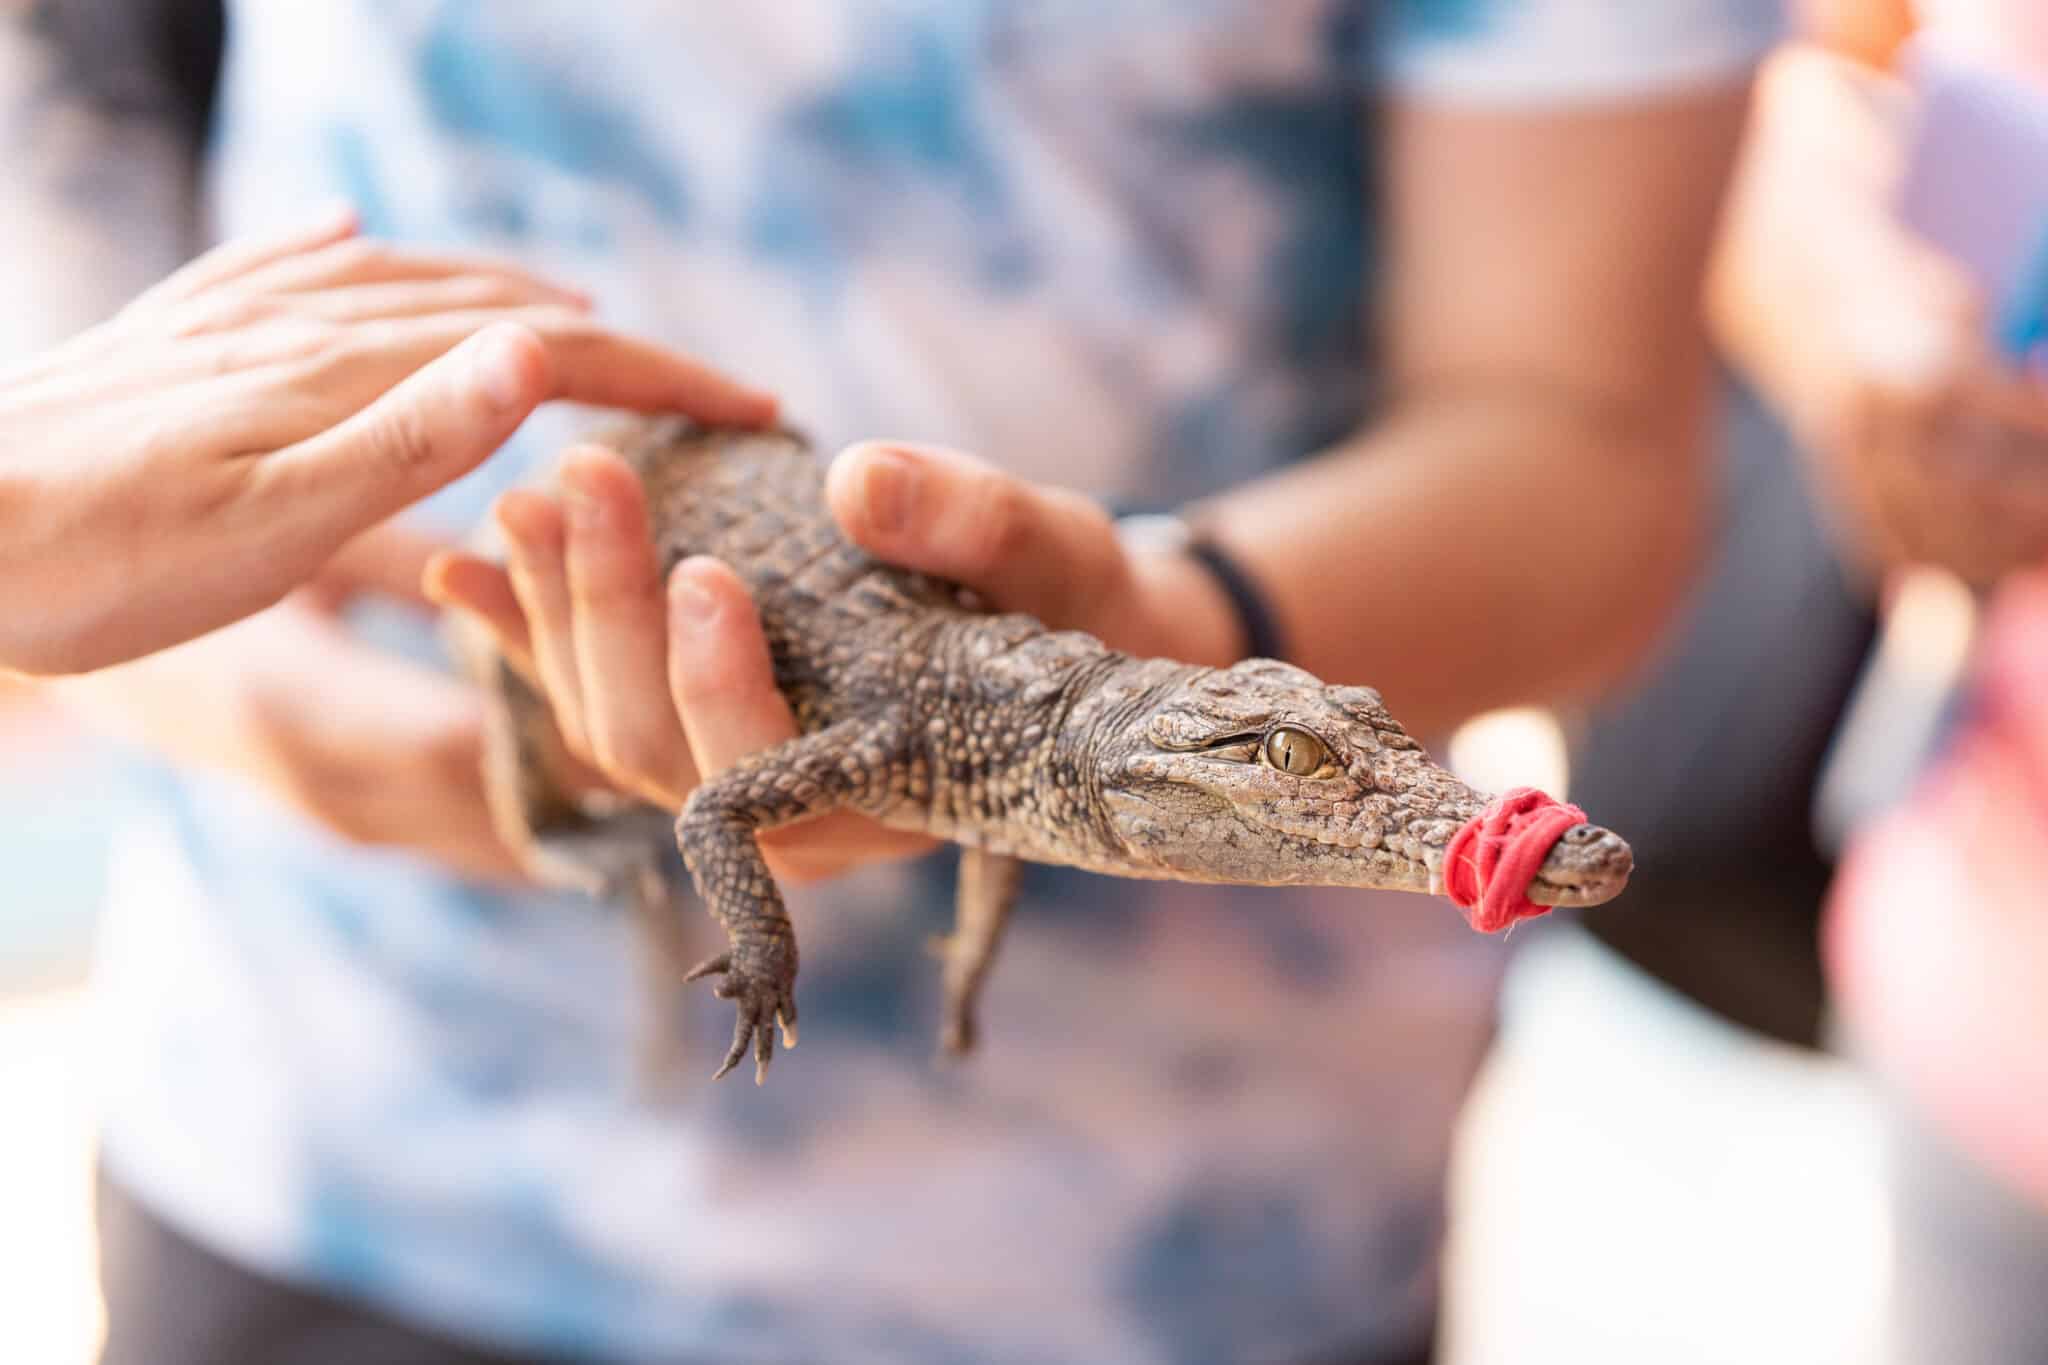 Egy ember egy kis krokodilt tart a kezében, száját gumiszalaggal befogva.